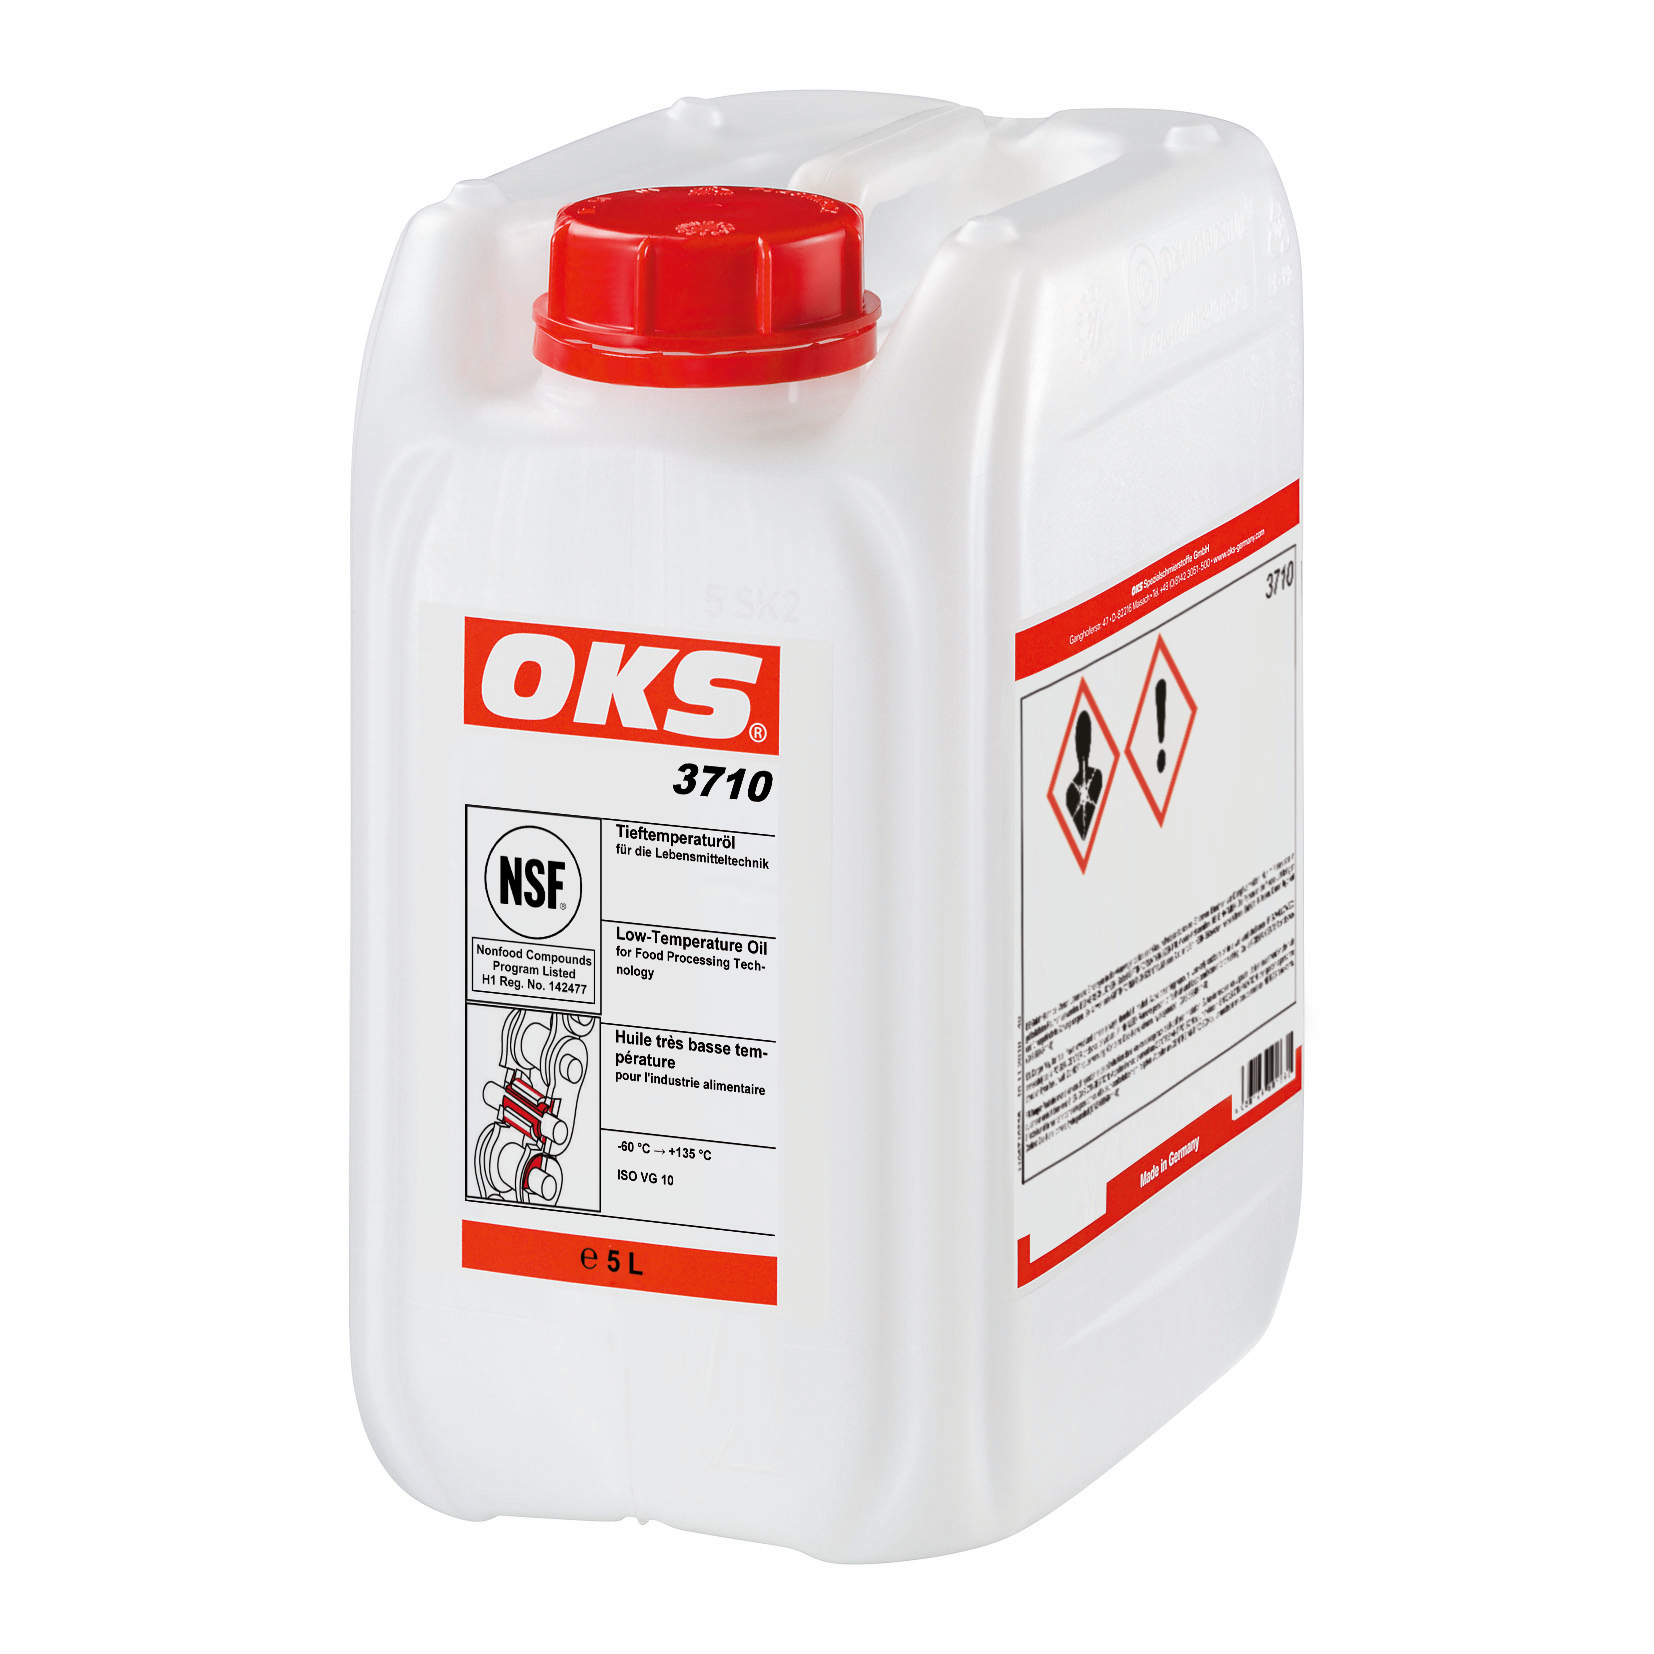 OKS3710-5 Volledig synthetische olie voor de levensmiddelentechniek, die ook inzetbaar is bij extreem lage temperaturen tot -60°C.